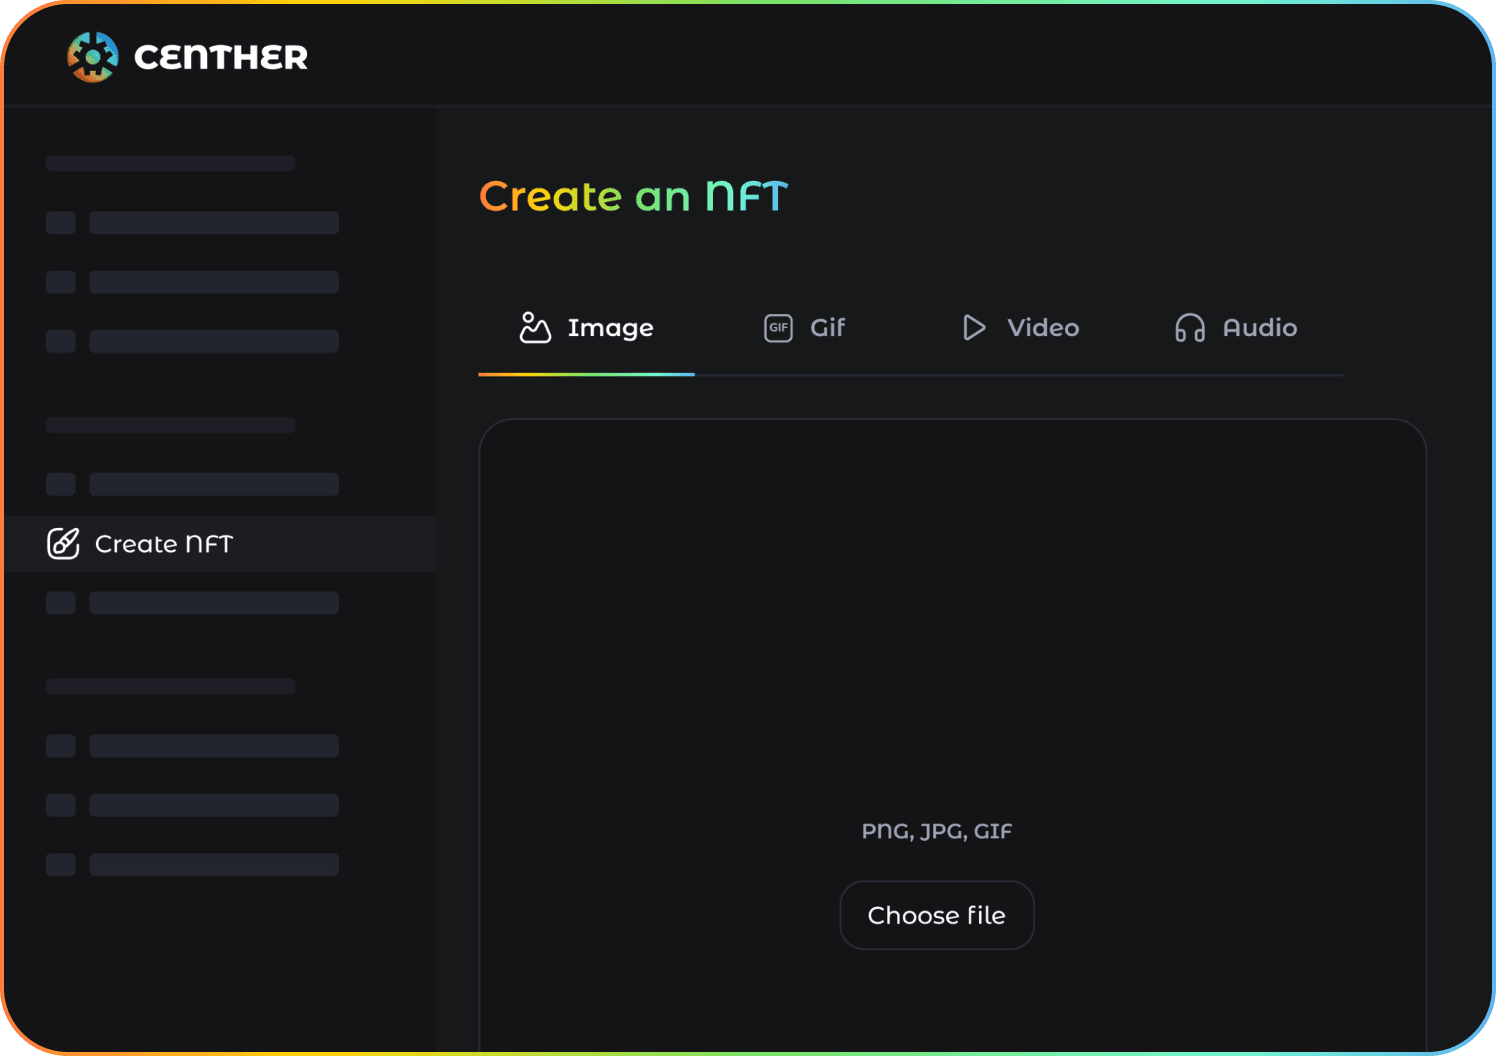 How to create a NFT